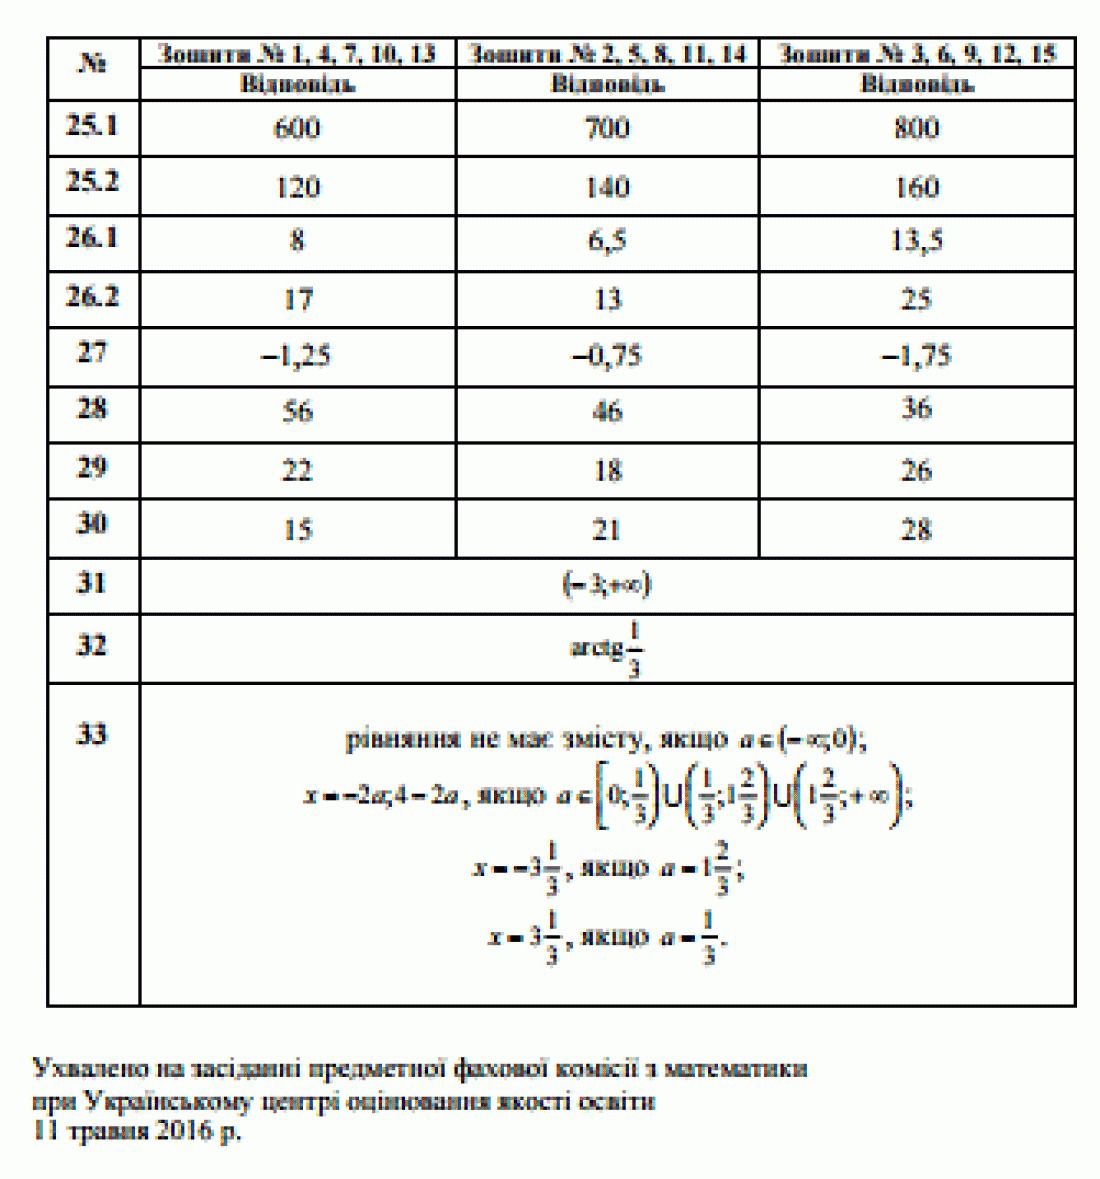 ЗНО 2016: відповіді на тест з математики. ЗНО 2016 почали писати з 5 травня. Випускники вже здали ЗНО (ЗНО) з математики та на сайті Міністерства освіти України вже з'явилися правильні відповіді.